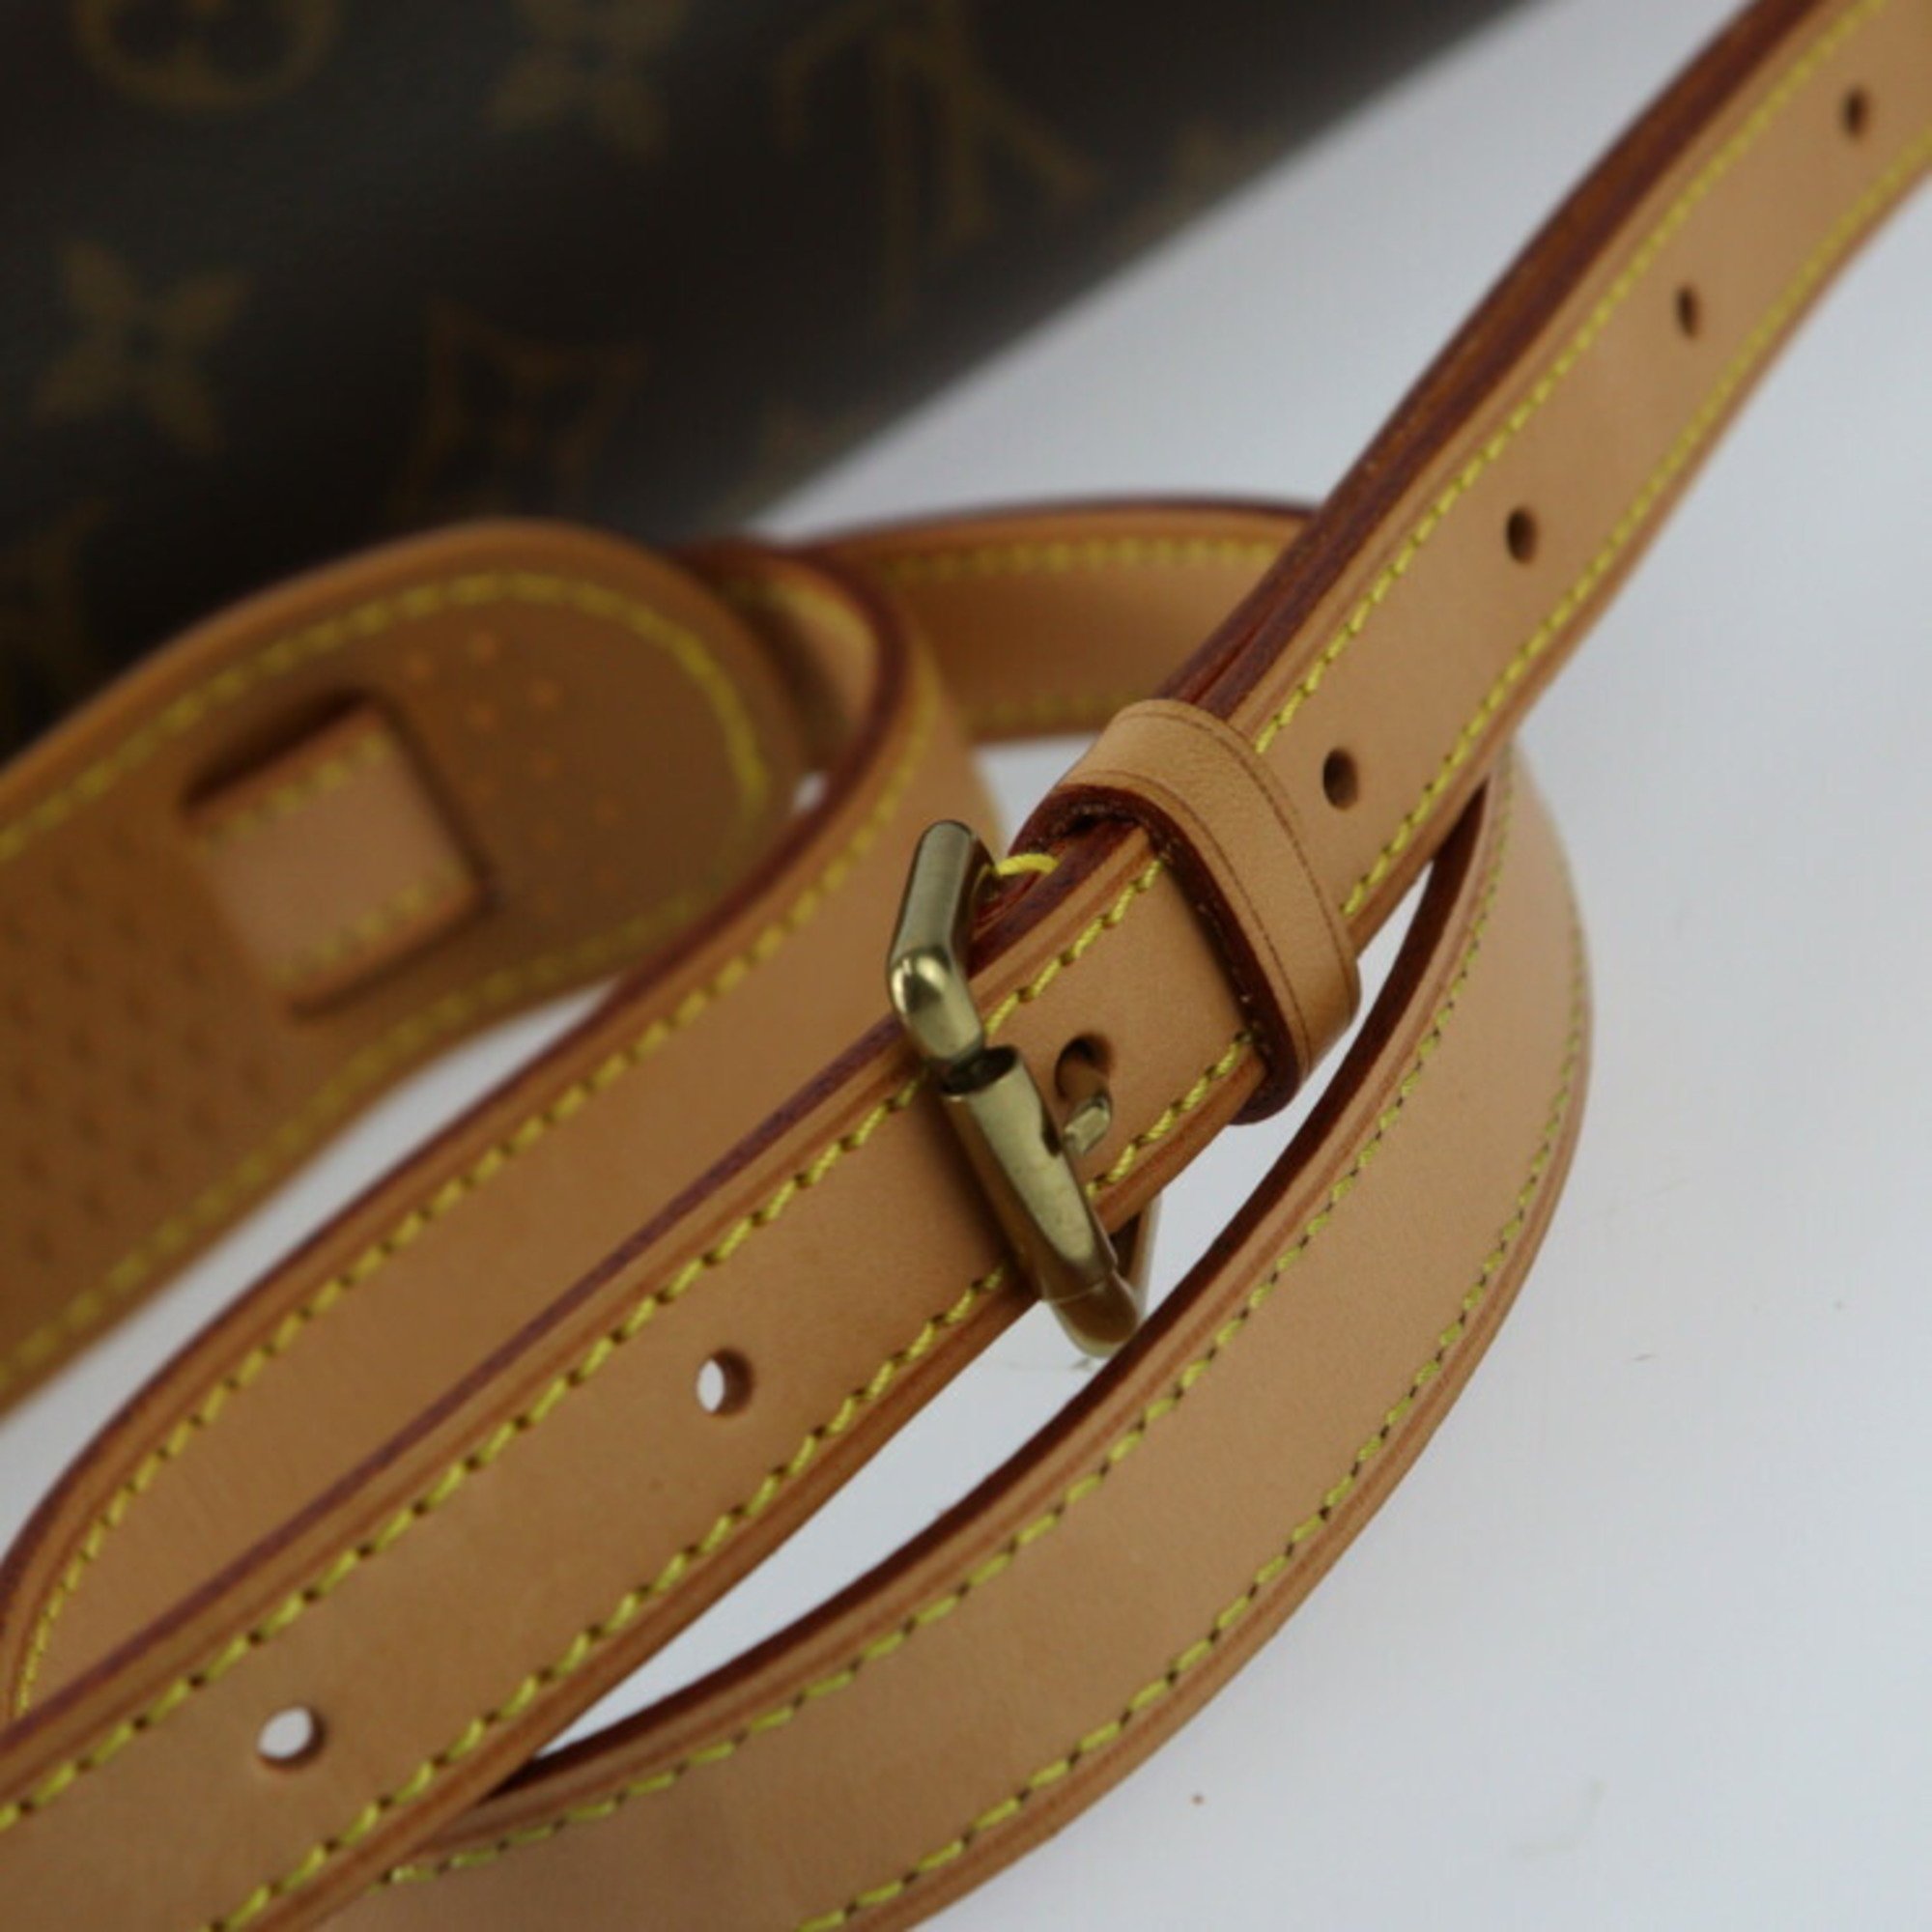 LOUIS VUITTON Louis Vuitton Sologne Monogram Shoulder Bag M42250 Canvas Leather Brown